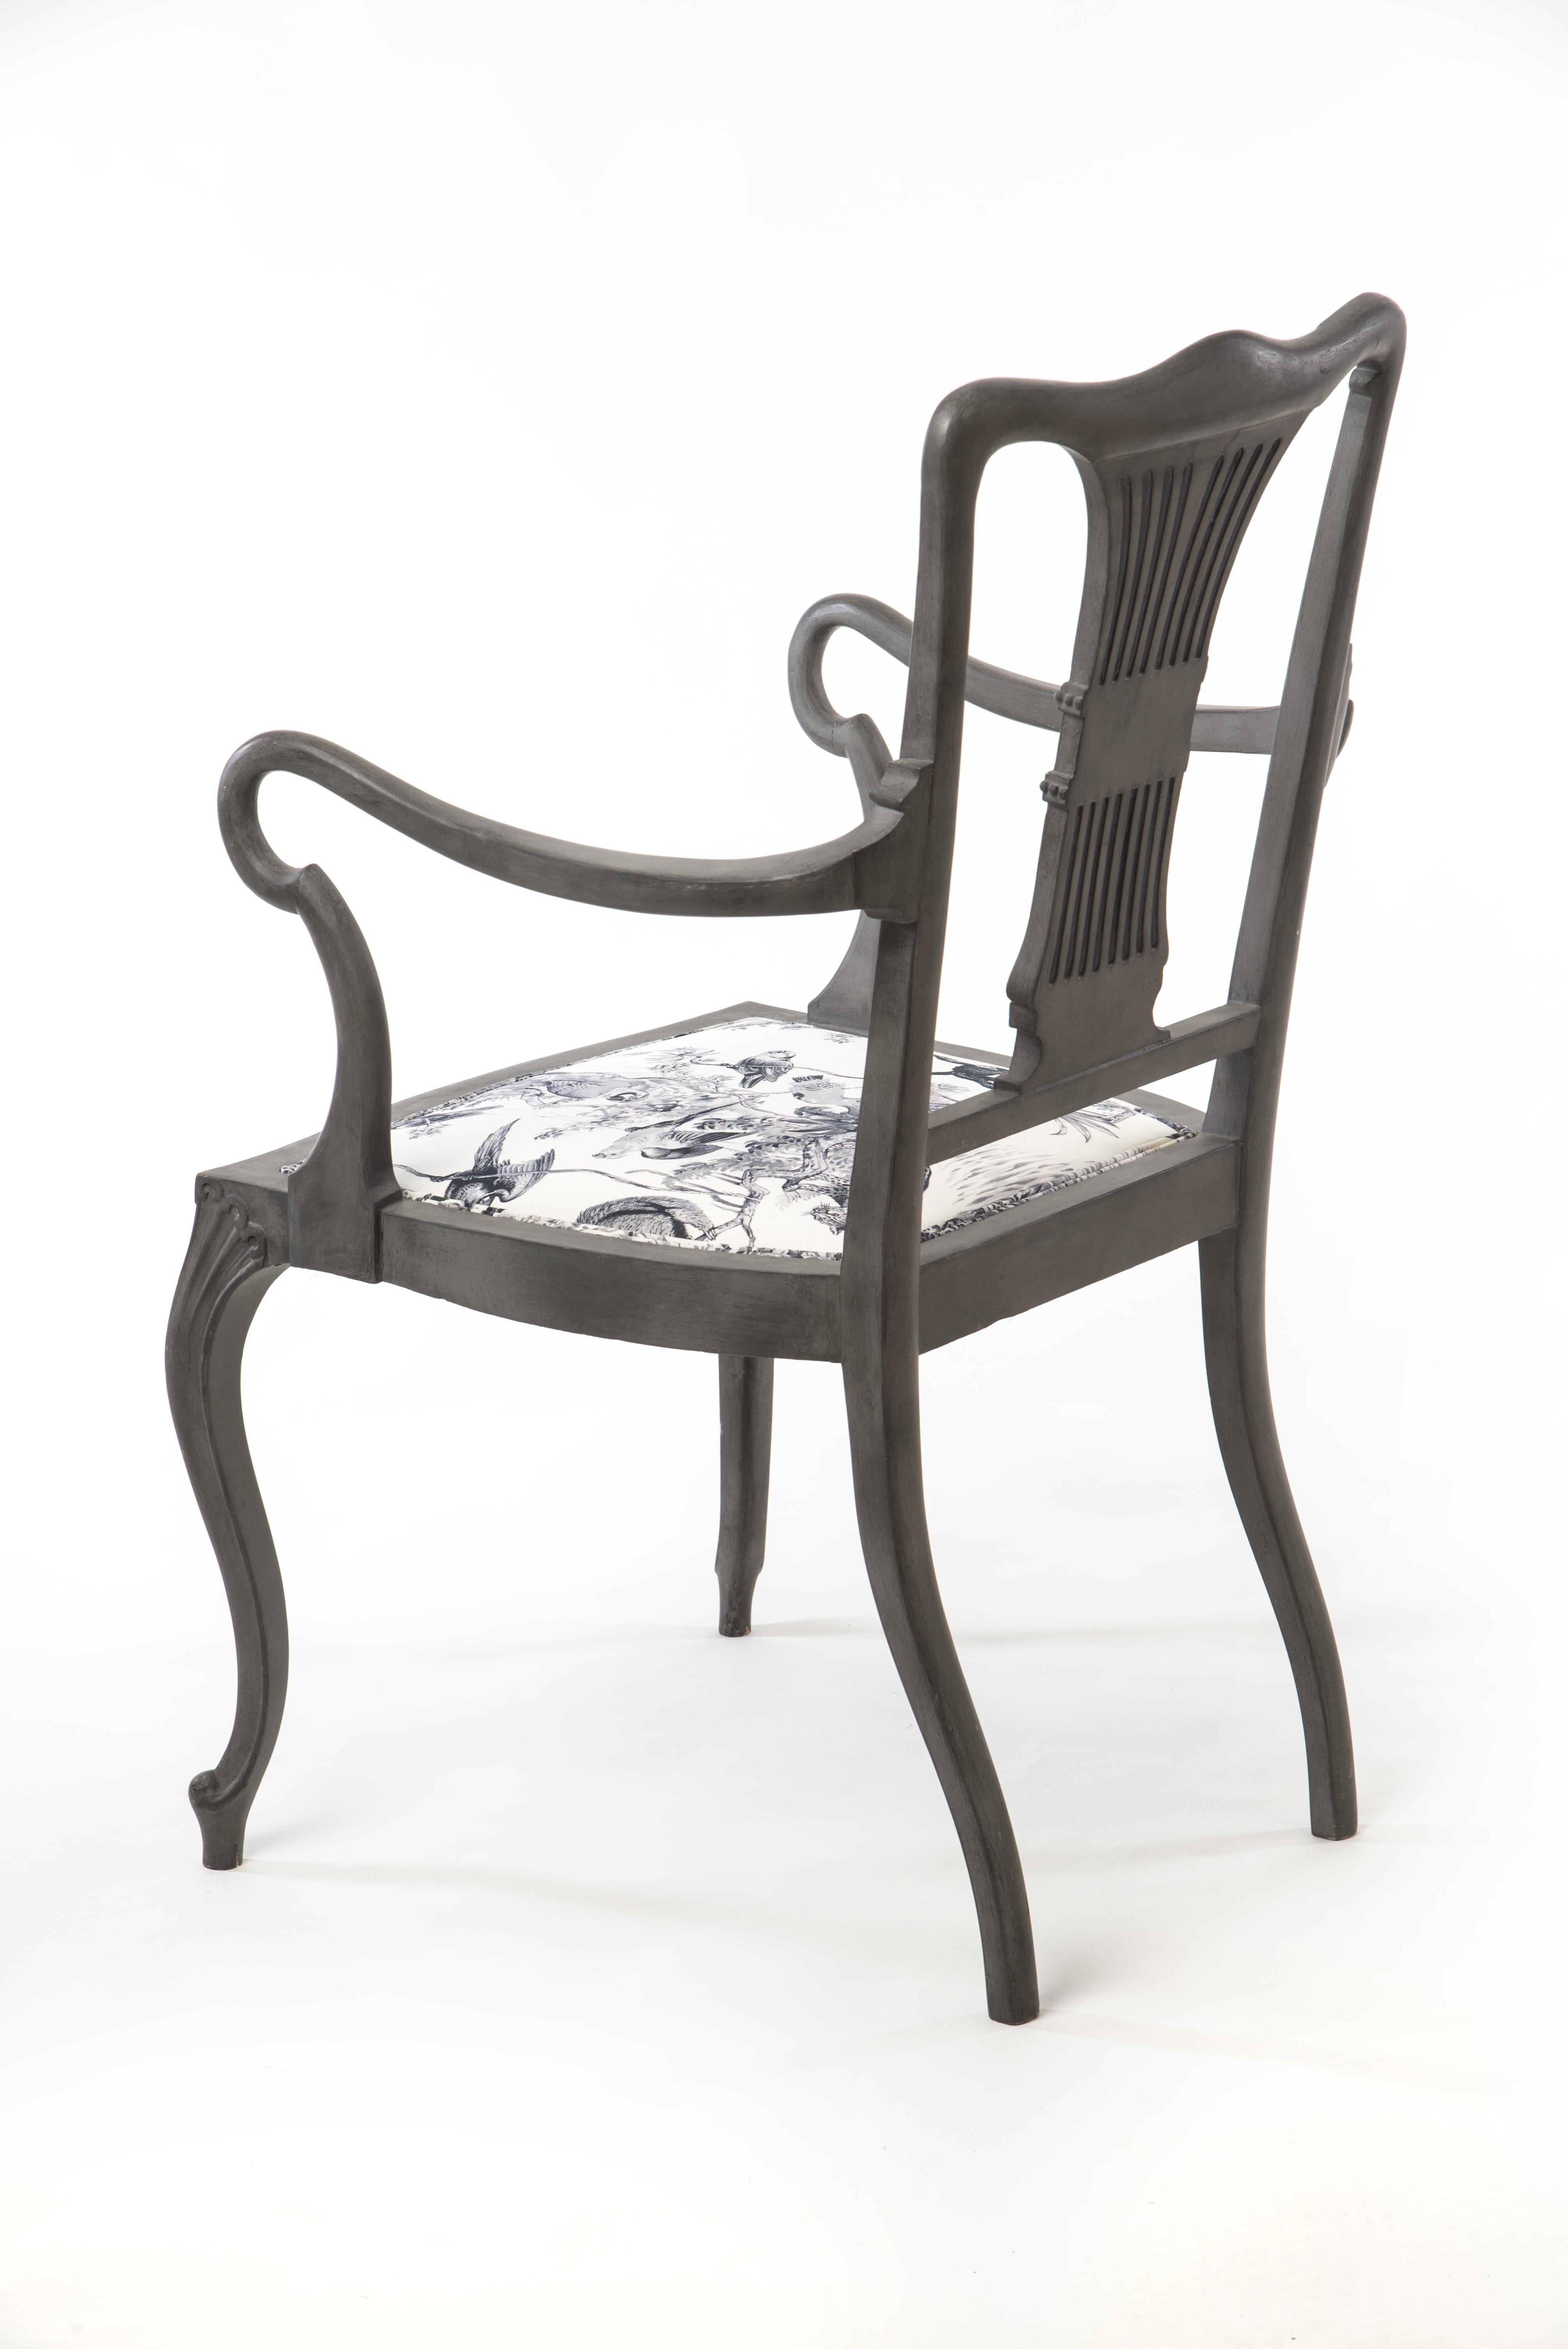 Wunderschöner Stuhl aus dem 19. Jahrhundert mit einer sehr interessanten Form und Erscheinung. Neu lackiert und mit Hermès-Stoff gepolstert, der perfekt zur einzigartigen Form des Stuhls passt.

 